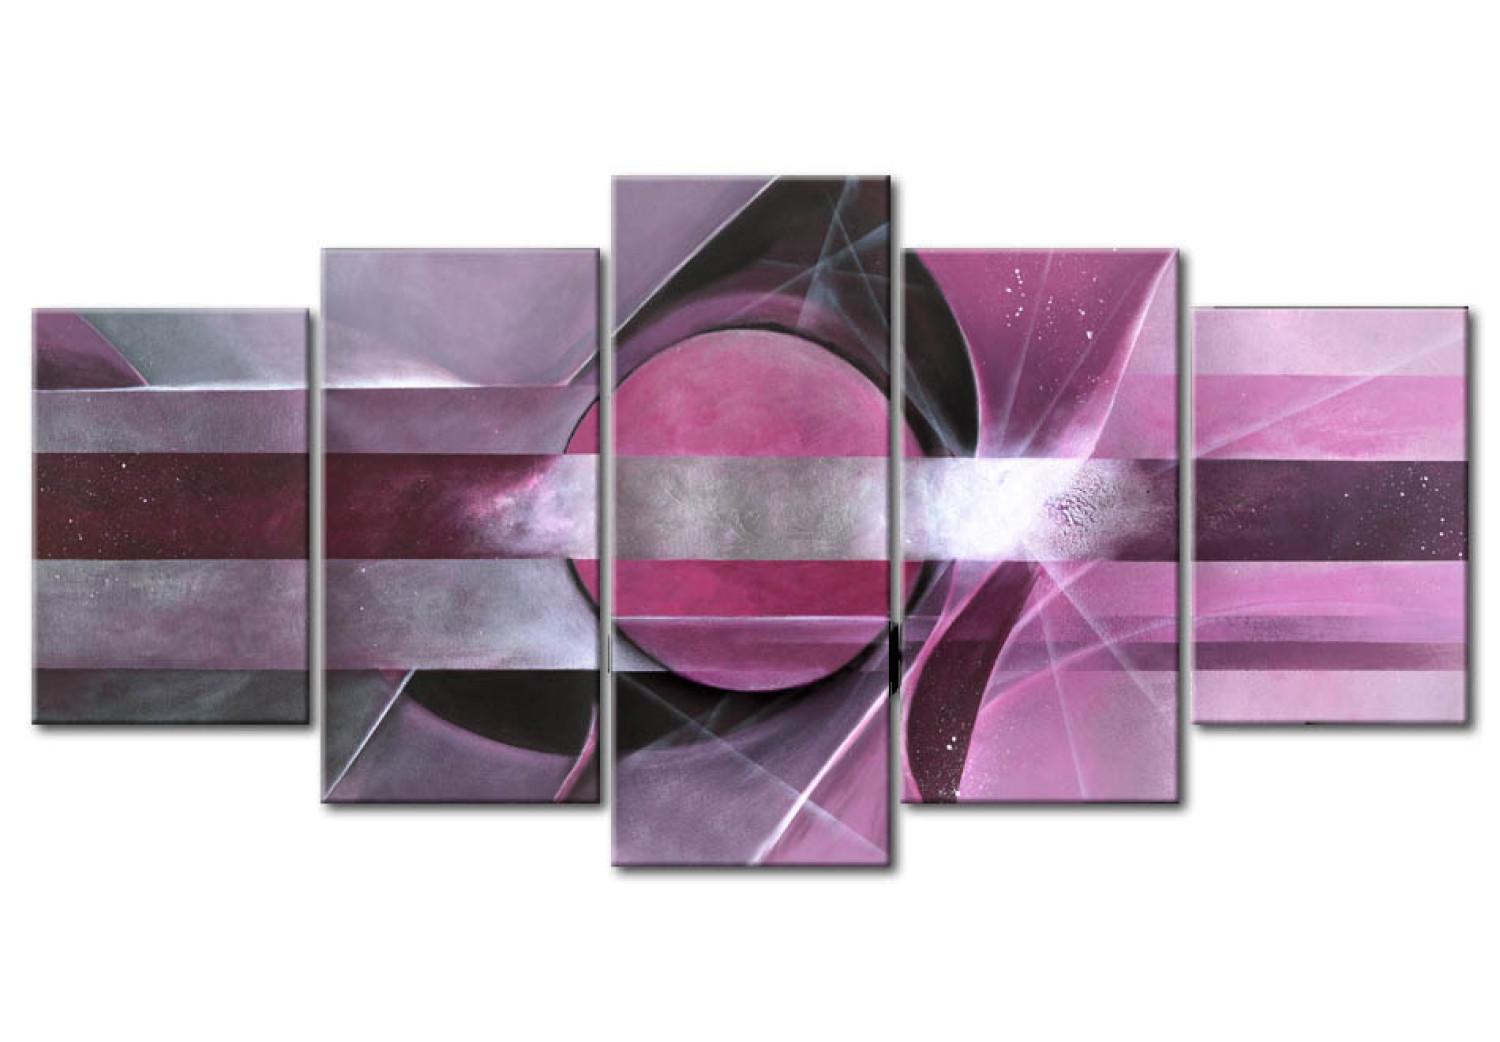 Cuadro decorativo Abstracción púrpura (5 piezas) - composición con patrones y diseños